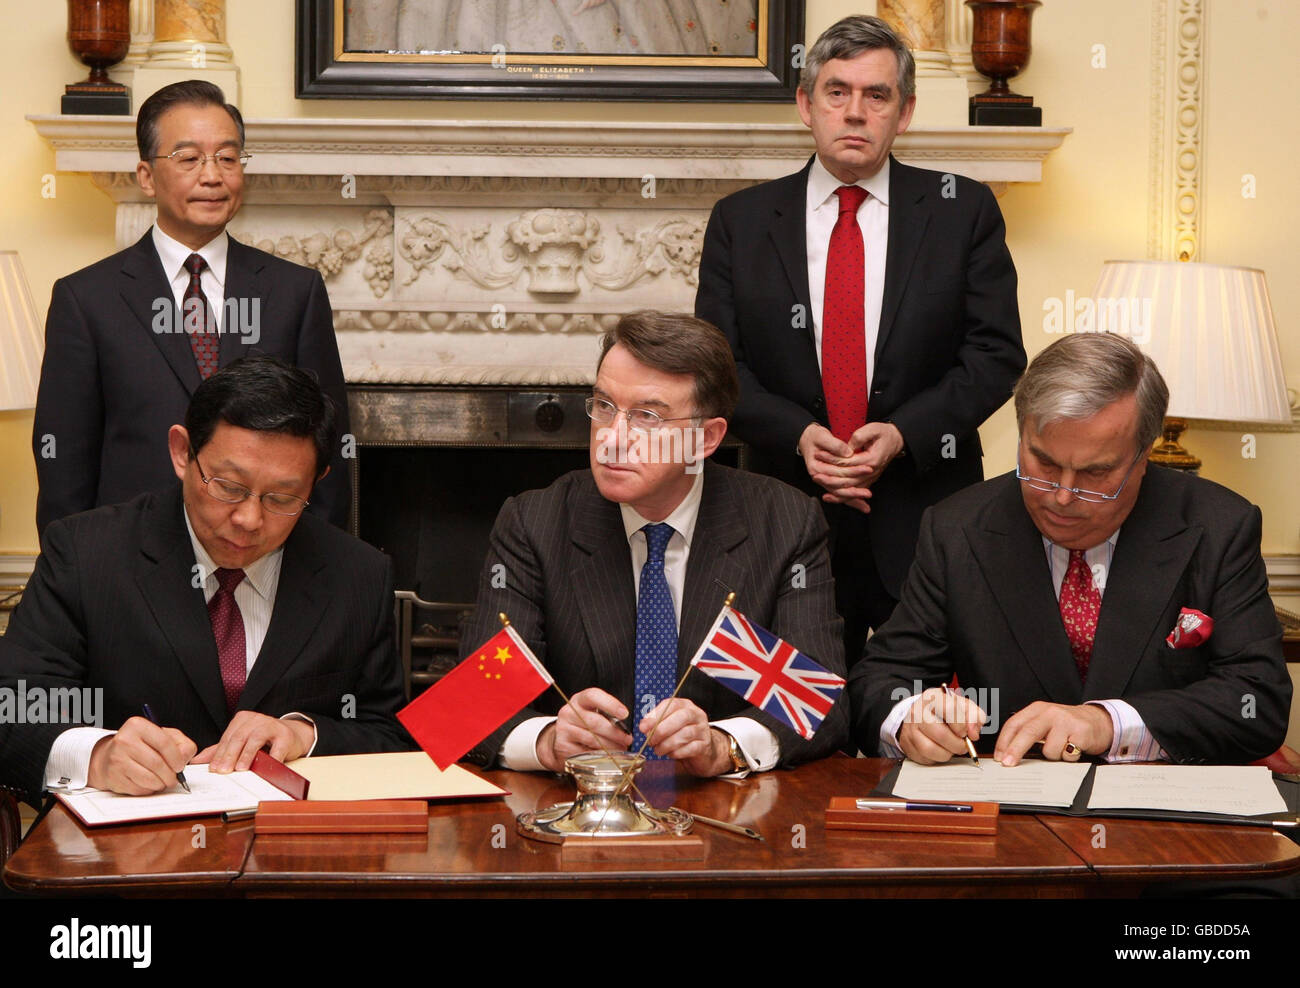 Der britische Premierminister Gordon Brown (rechts stehend), der Handelsminister Peter Mandelson (Mitte) und der chinesische Premierminister Wen Jiabao (links stehend) sind Zeugen der Unterzeichnung eines Handelsabkommens in der Downing Street Nr. 10. Verlegen Downing Street Beamte haben ihre Versorgung mit Unionsflaggen überprüft, nachdem sie eine auf den Kopf gestellt bei einer hochkarätigen Veranstaltung bei Nummer 10. Stockfoto